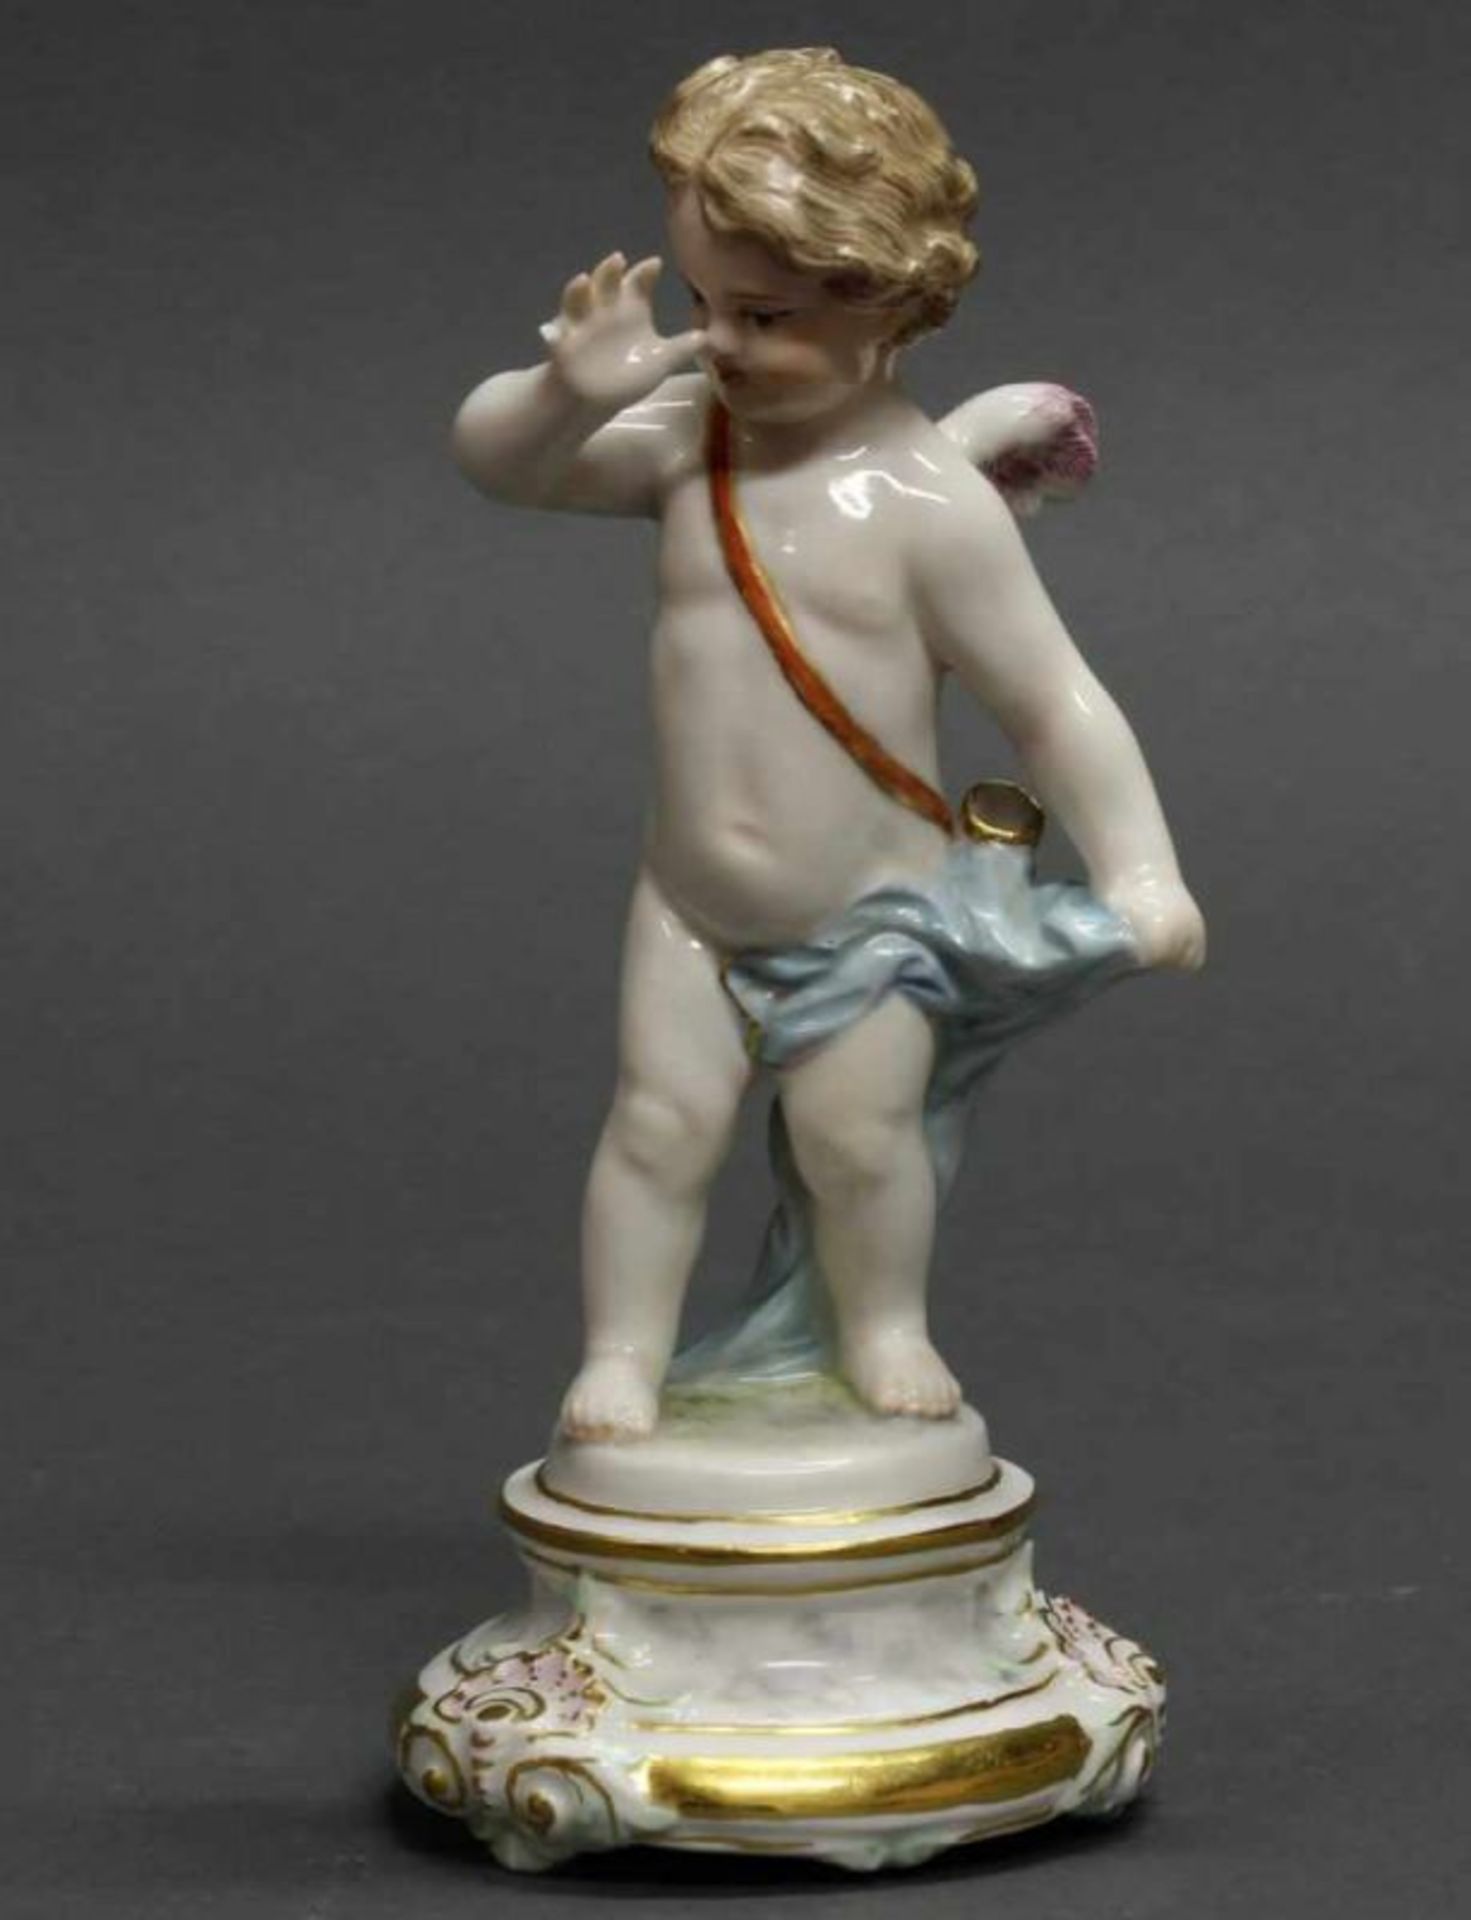 Porzellanfigur, "Amor, eine Nase drehend", Meissen, 1850-1924, 1. Wahl, Modellnummer M 101,